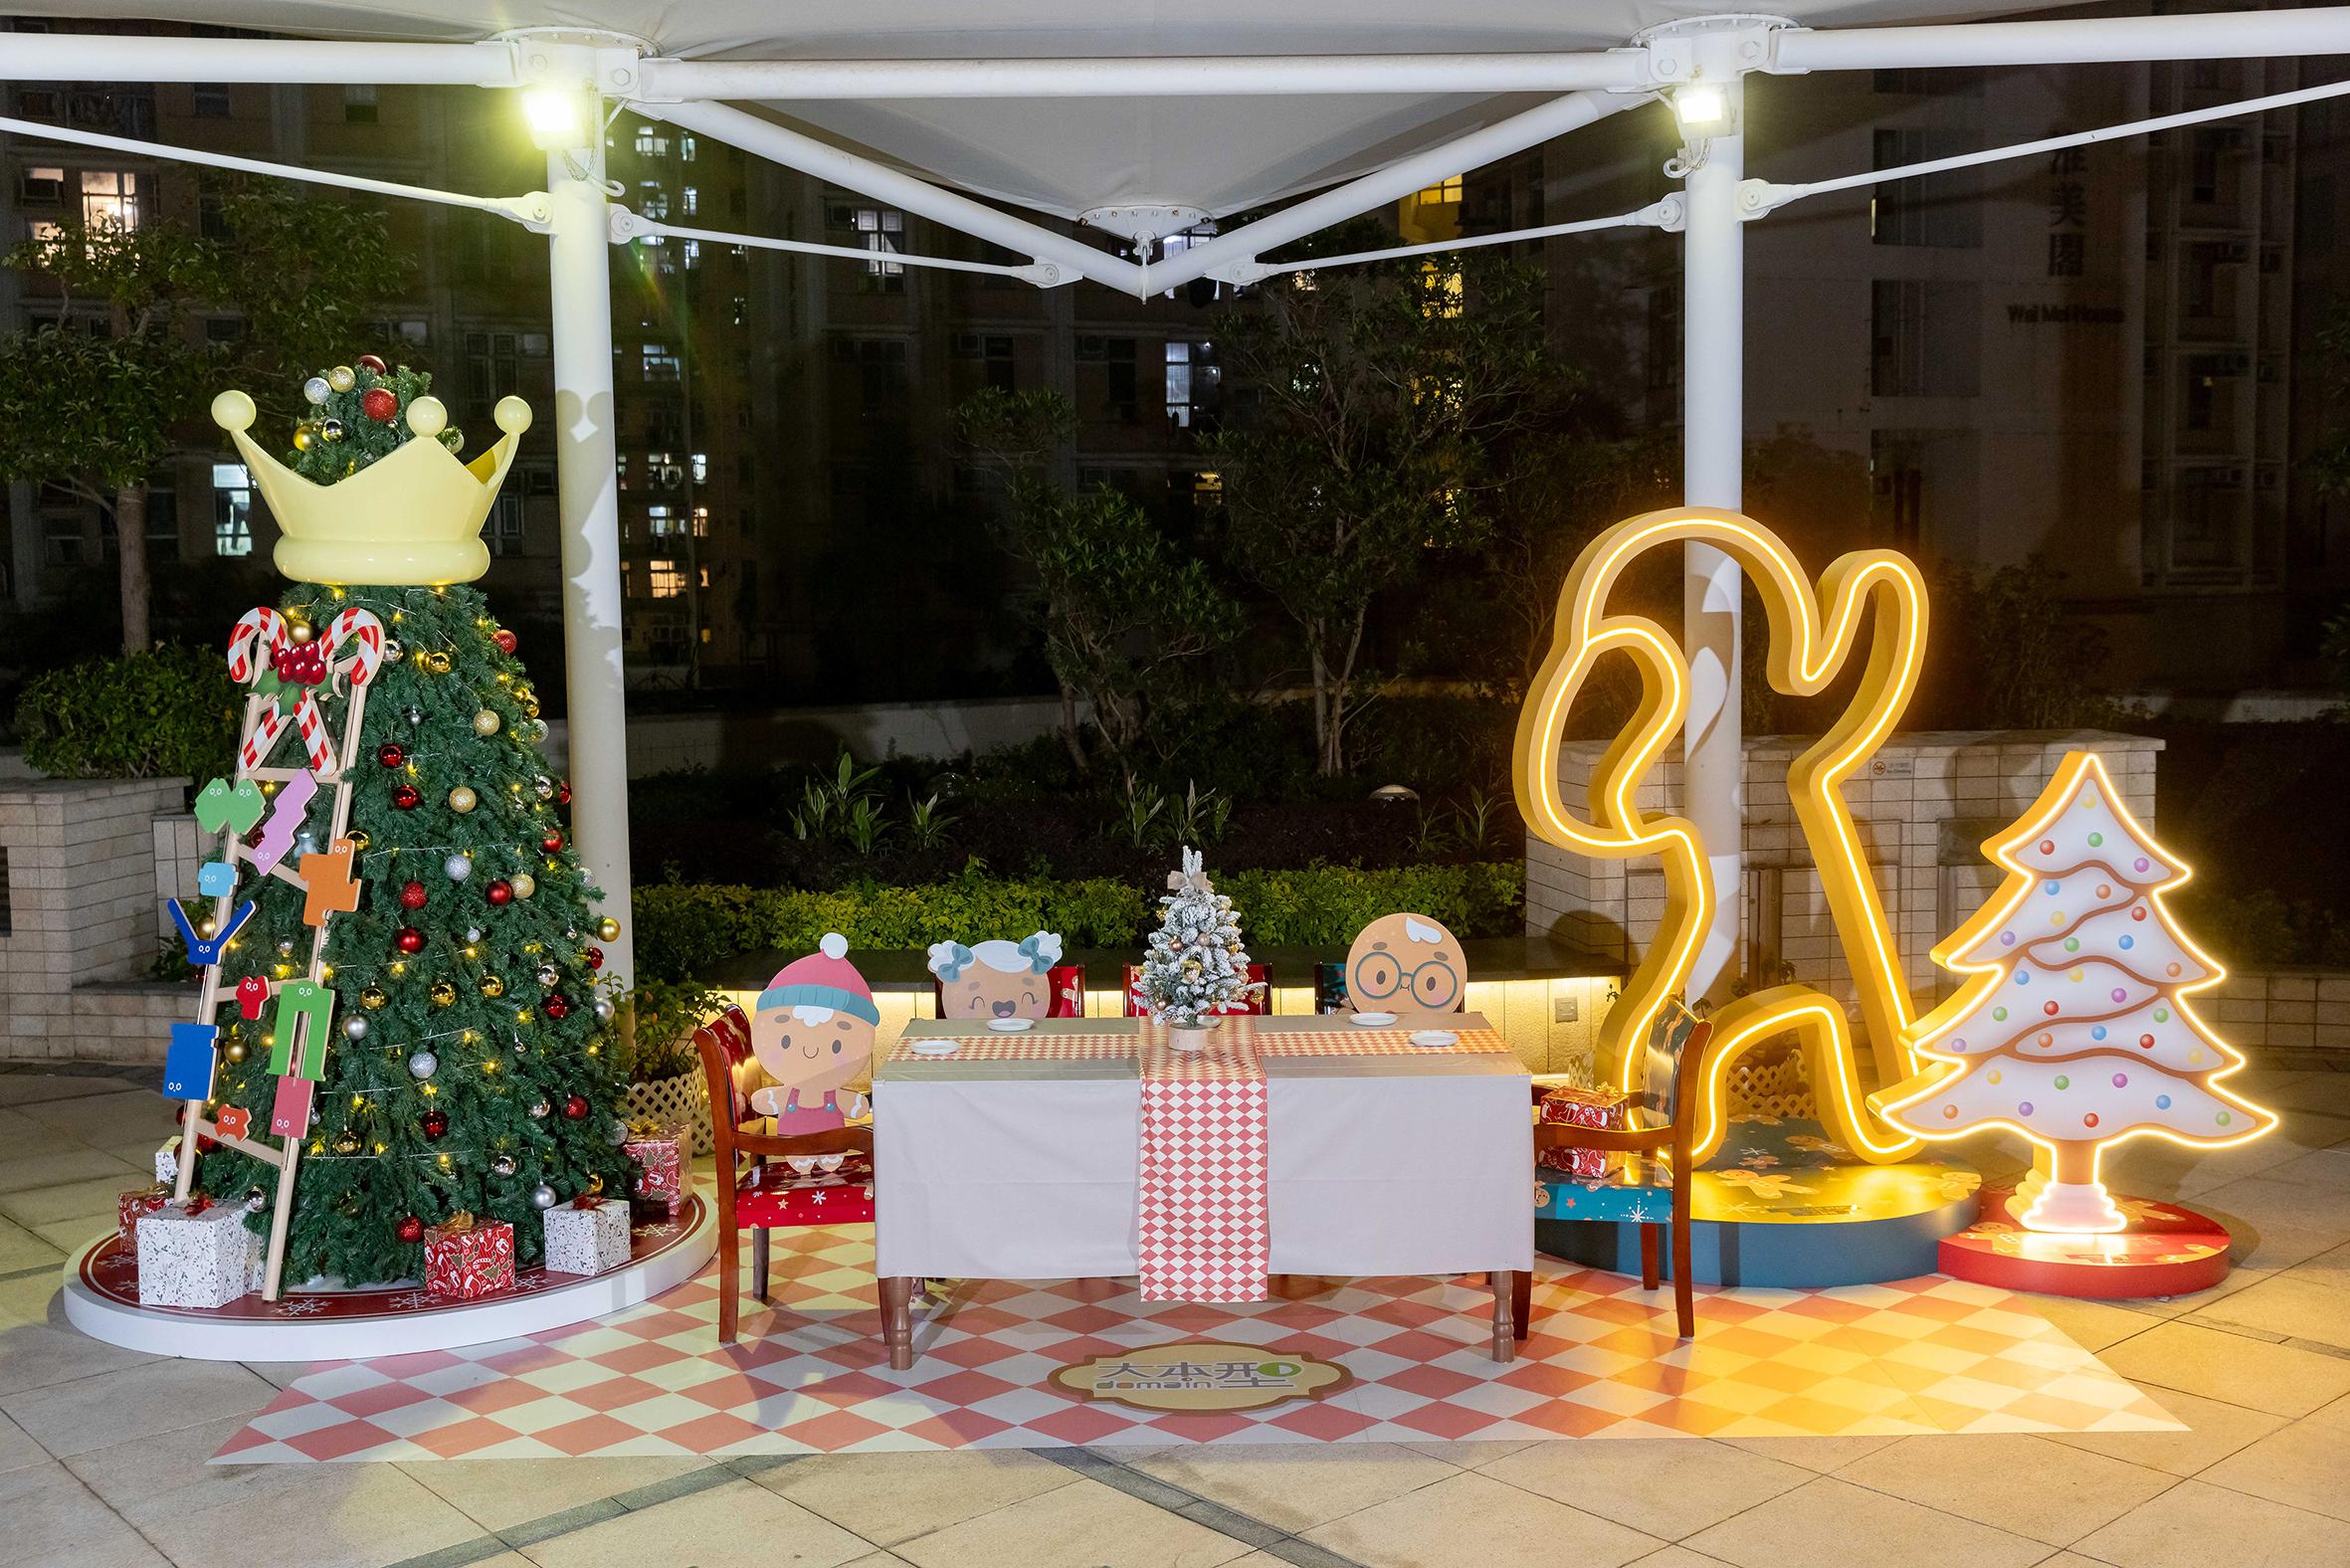 香港房屋委員會（房委會）於轄下多個商場舉辦聖誕節推廣及夜繽紛活動，與市民歡度聖誕。圖示房委會位於油塘的區域商場大本型於空中花園的薑餅人模具聖誕裝飾。